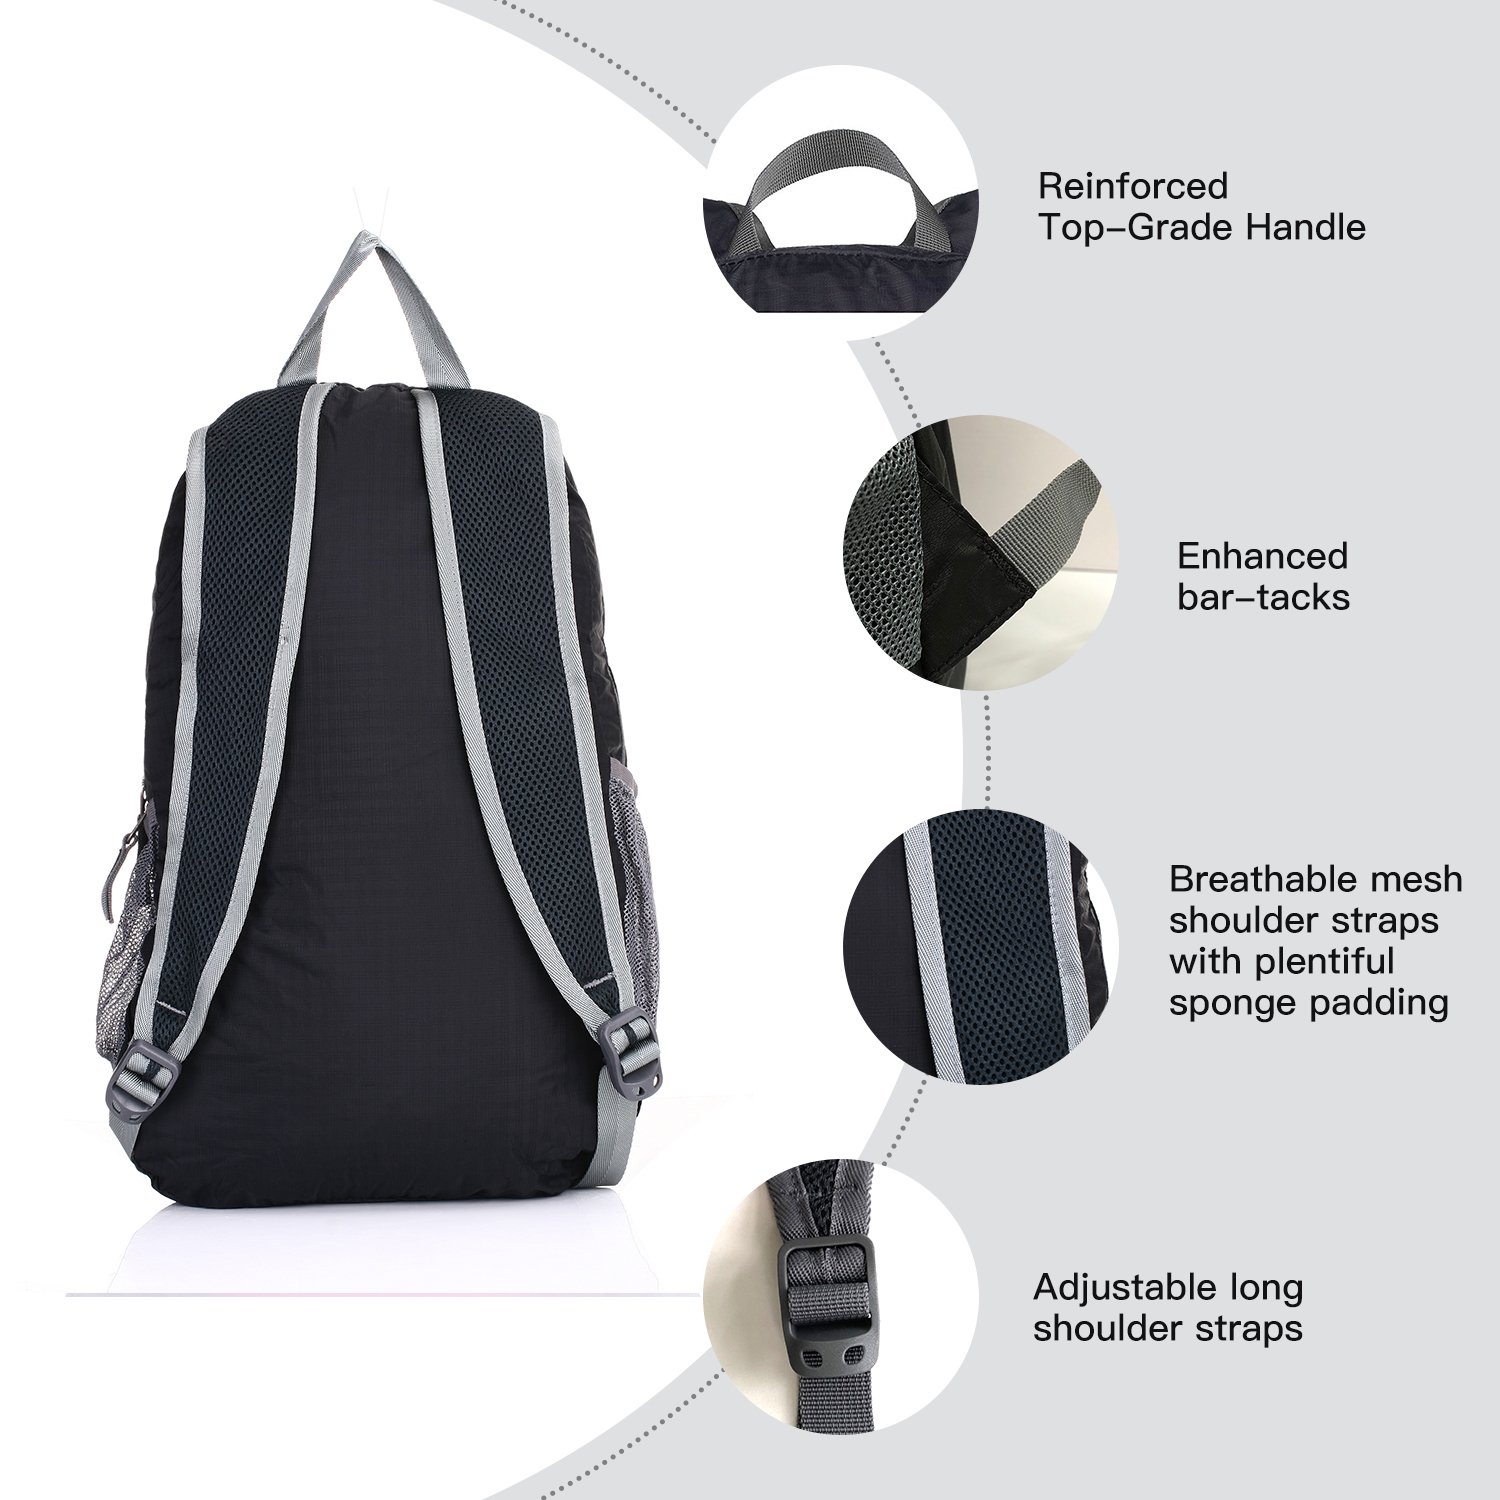 Outlander Packable Handy Lightweight Travel Hiking Backpack Daypack, Black